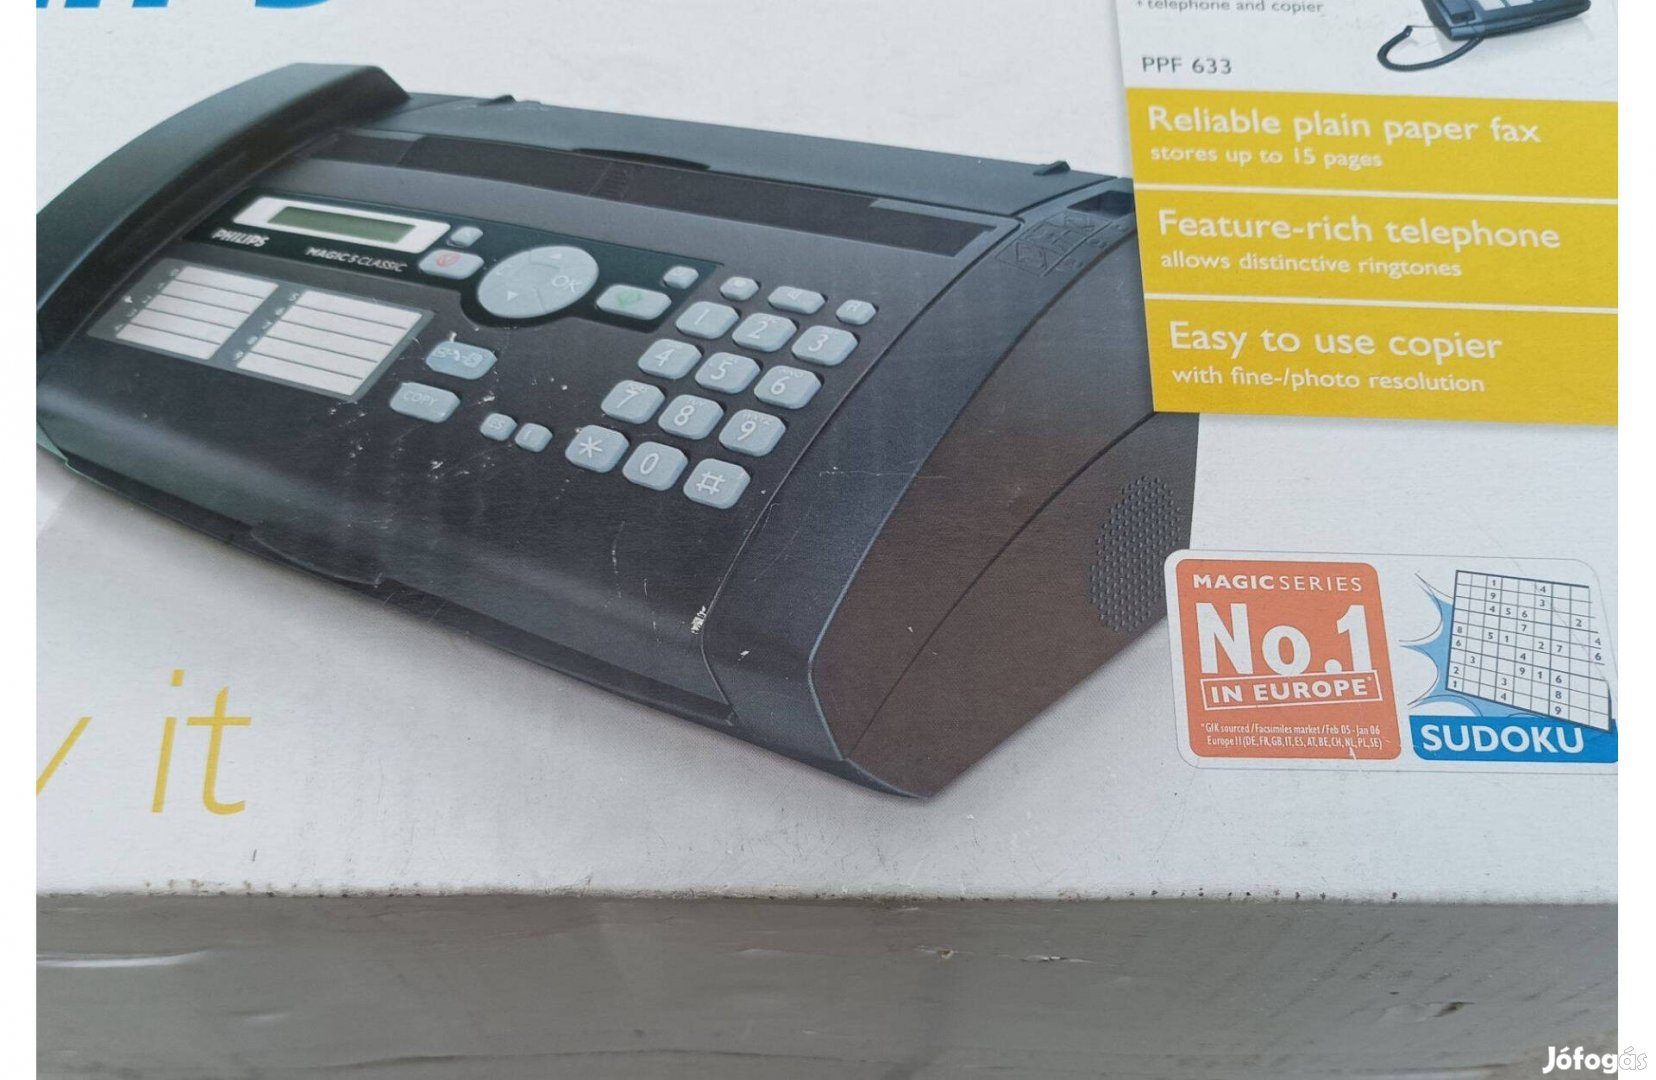 Philips klasszic tel.,fax, nyomtató egyben(szinte új) 9000 Ft XVII